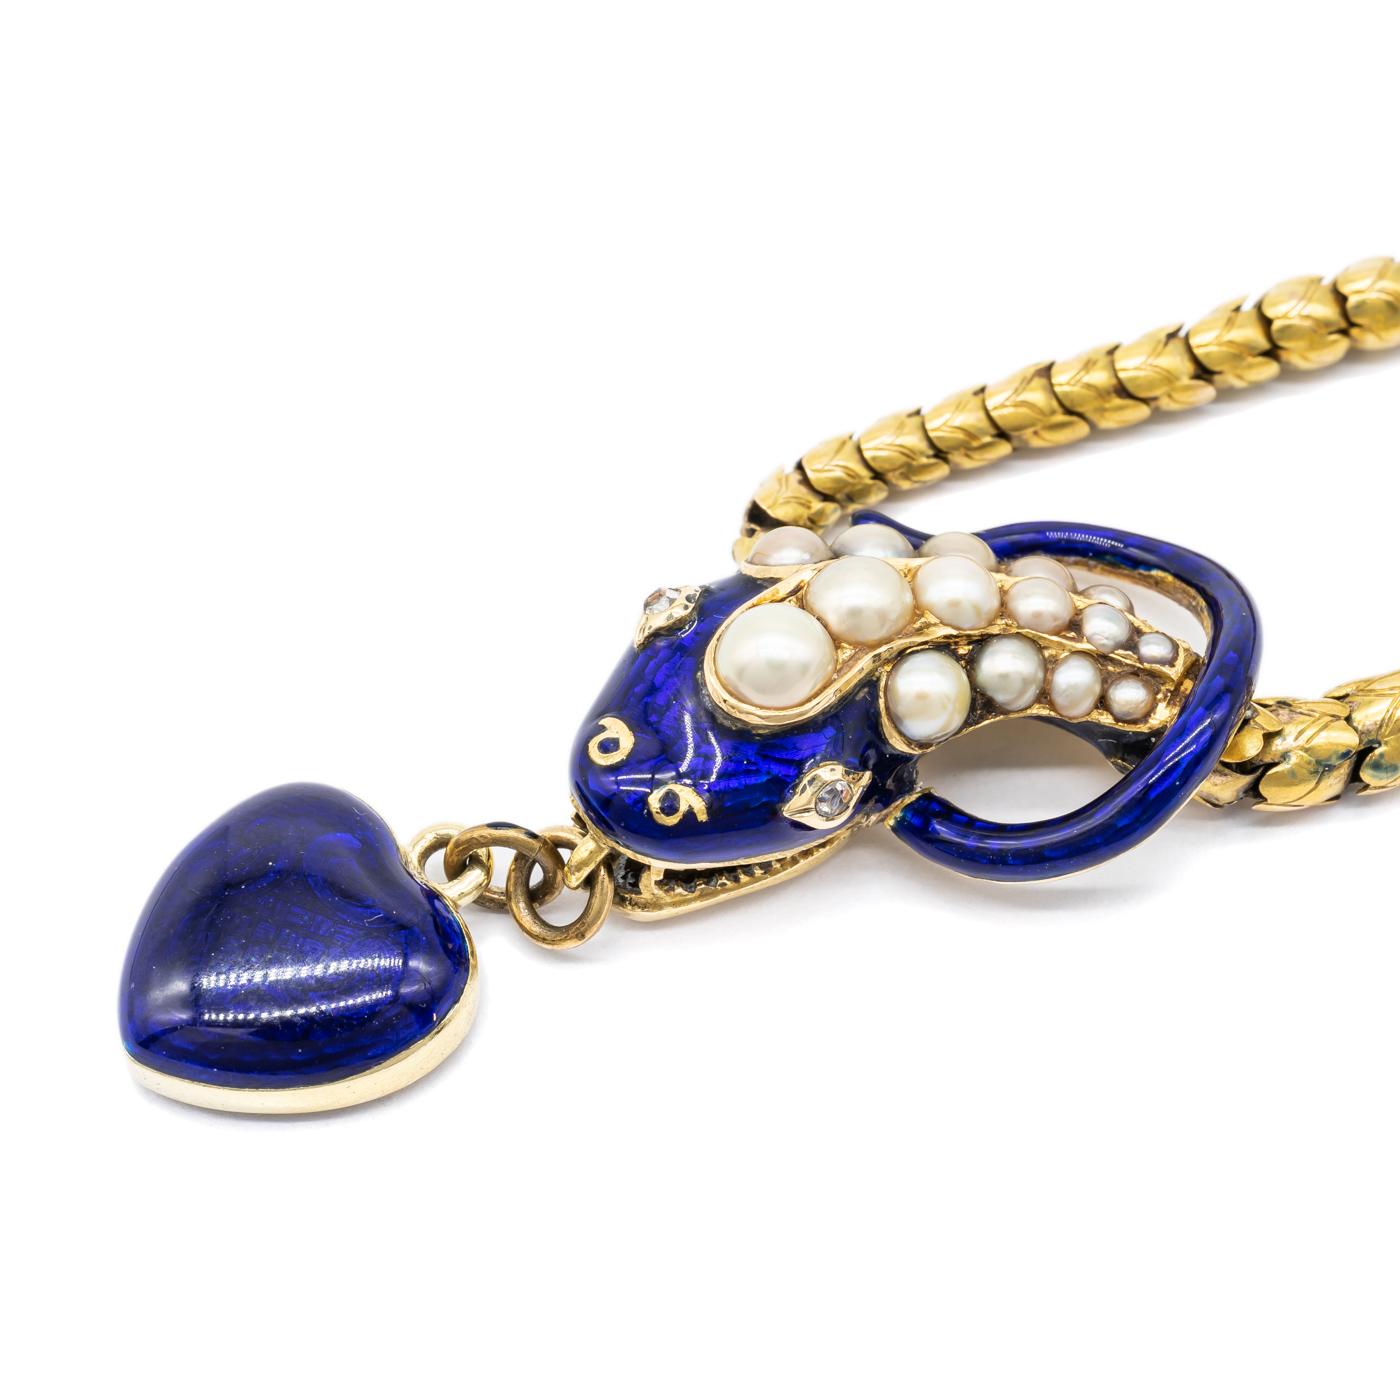 enamel heart locket necklace